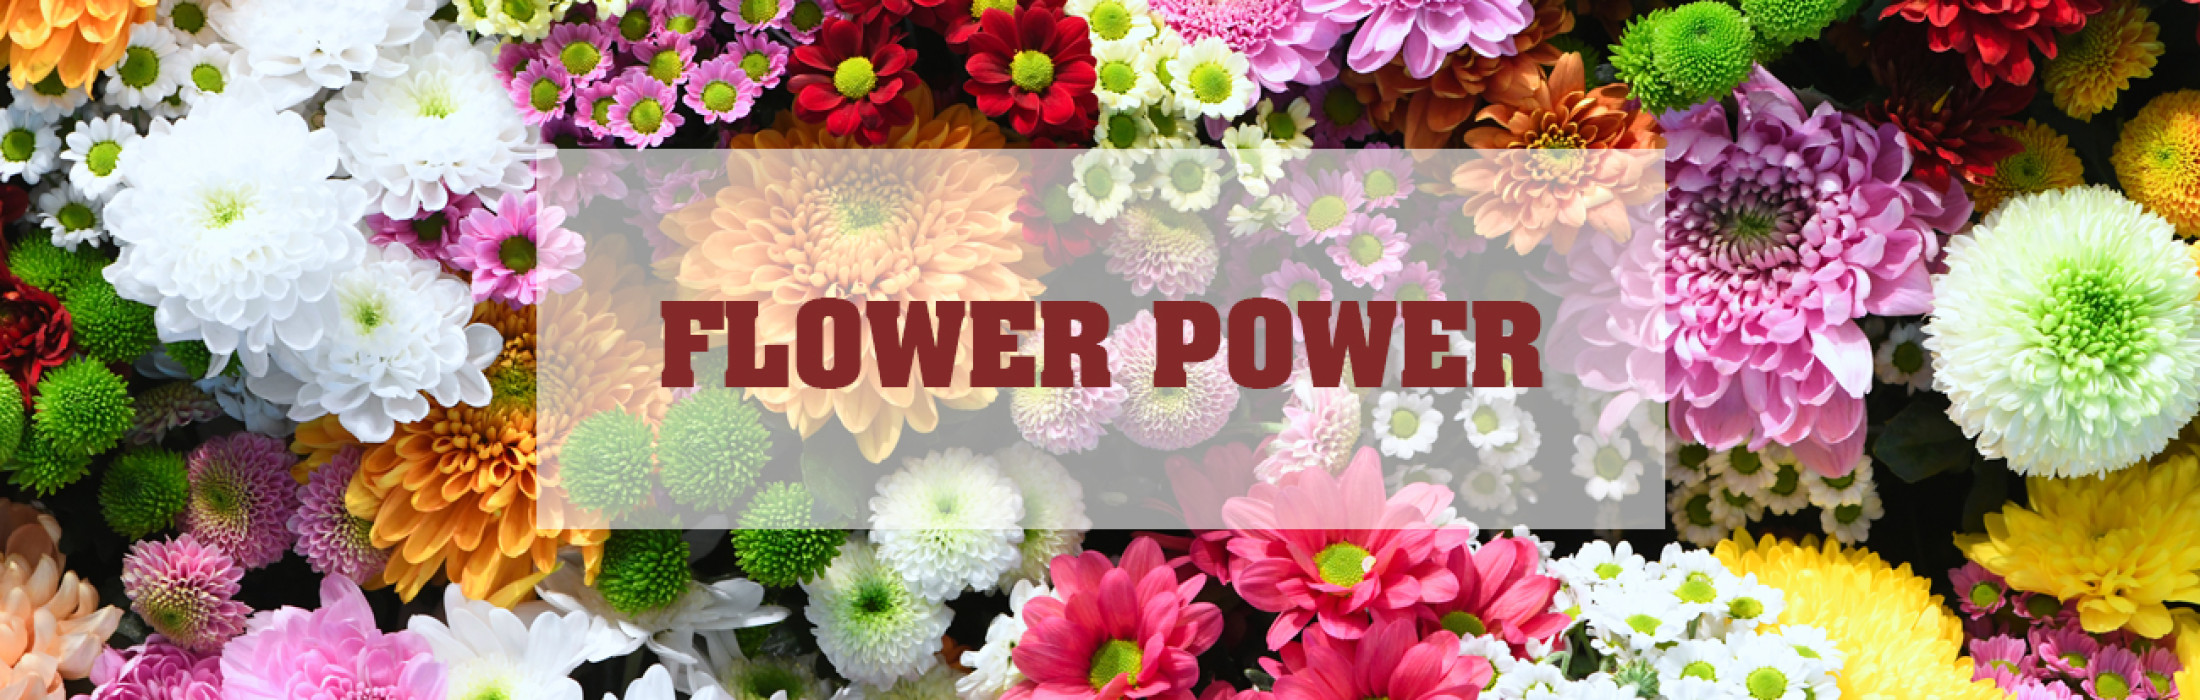 Flower Power Banner